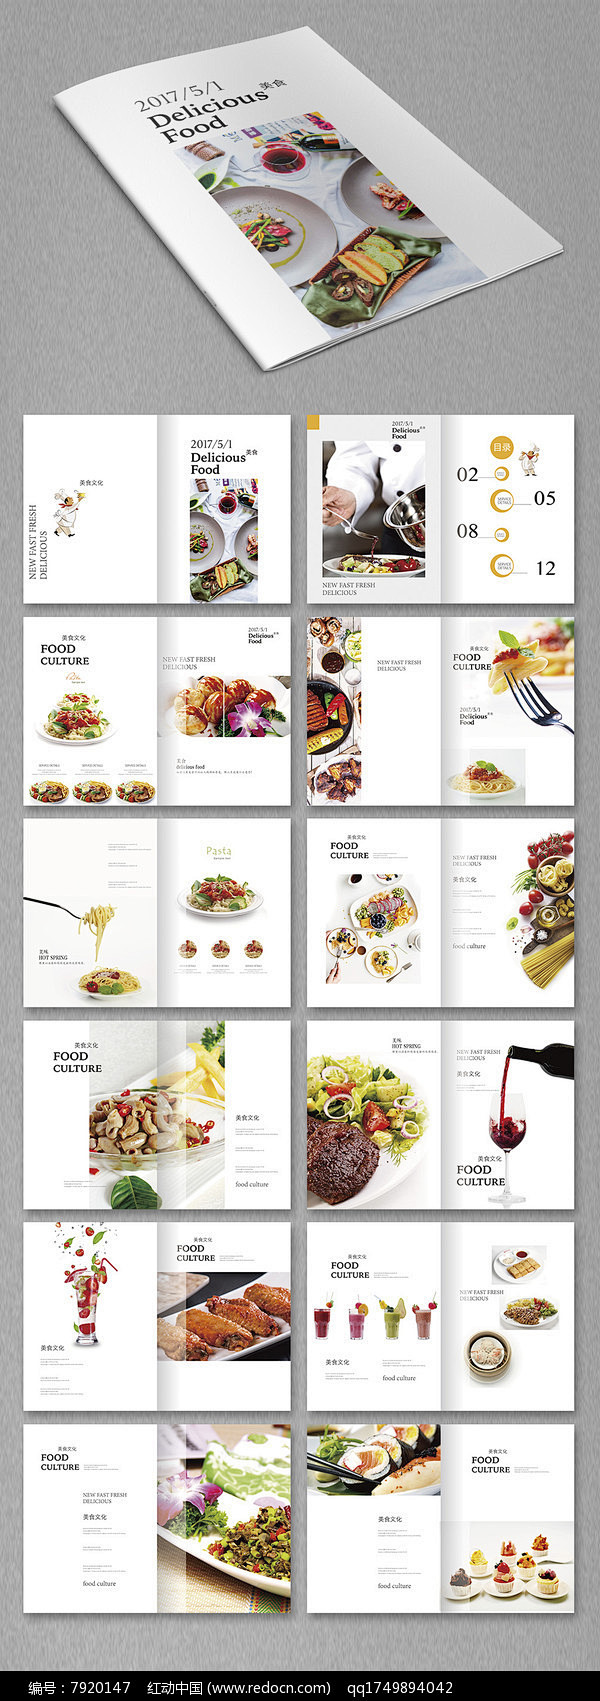 小清新美食画册设计图片